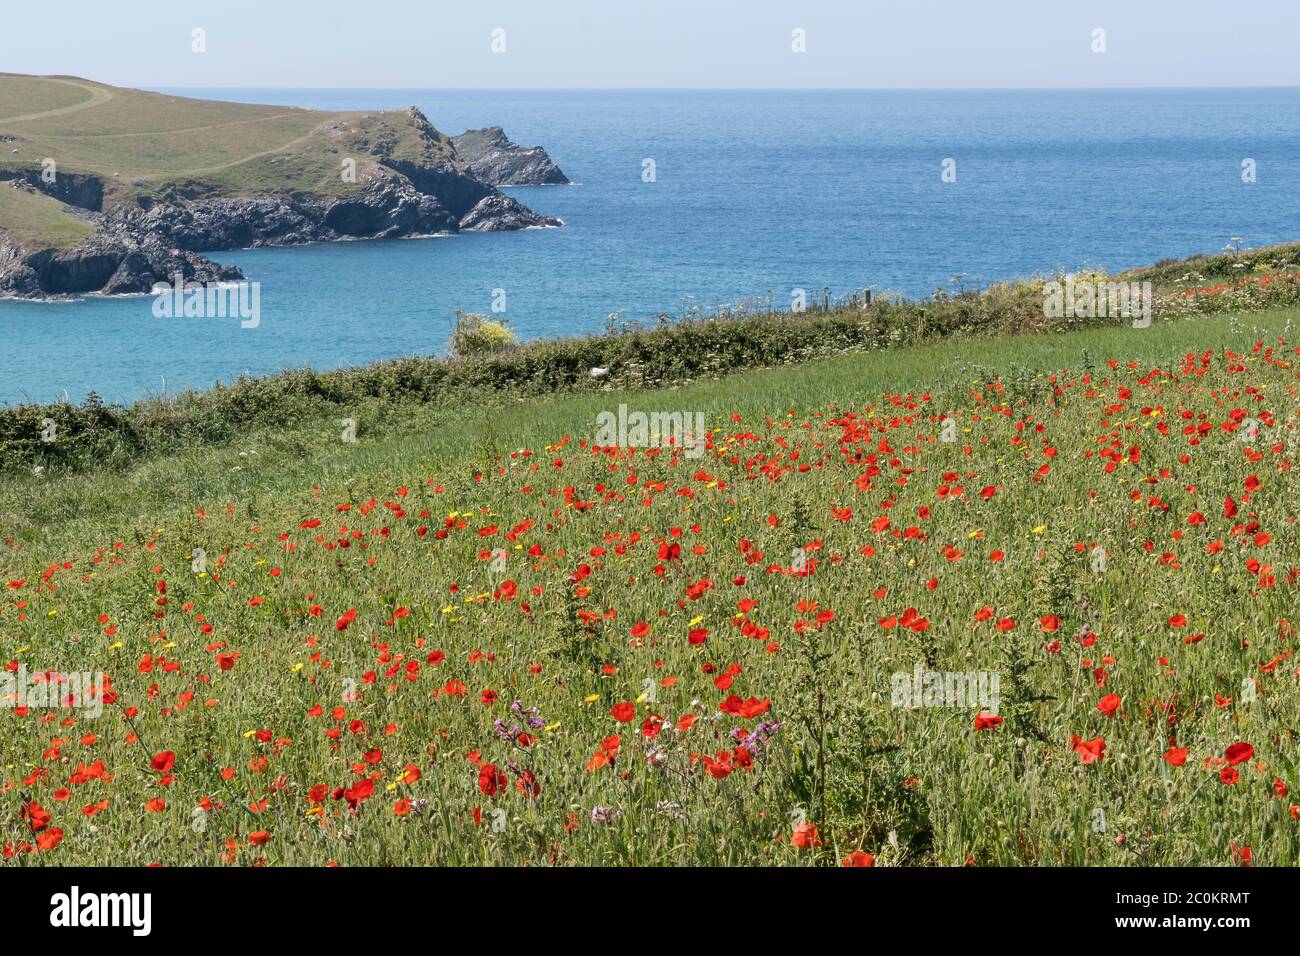 La vue spectaculaire des rhoeas de Poppies communes qui poussent dans un champ surplombant Polly Porth Joke dans le cadre du projet des champs arables sur Pentire Banque D'Images